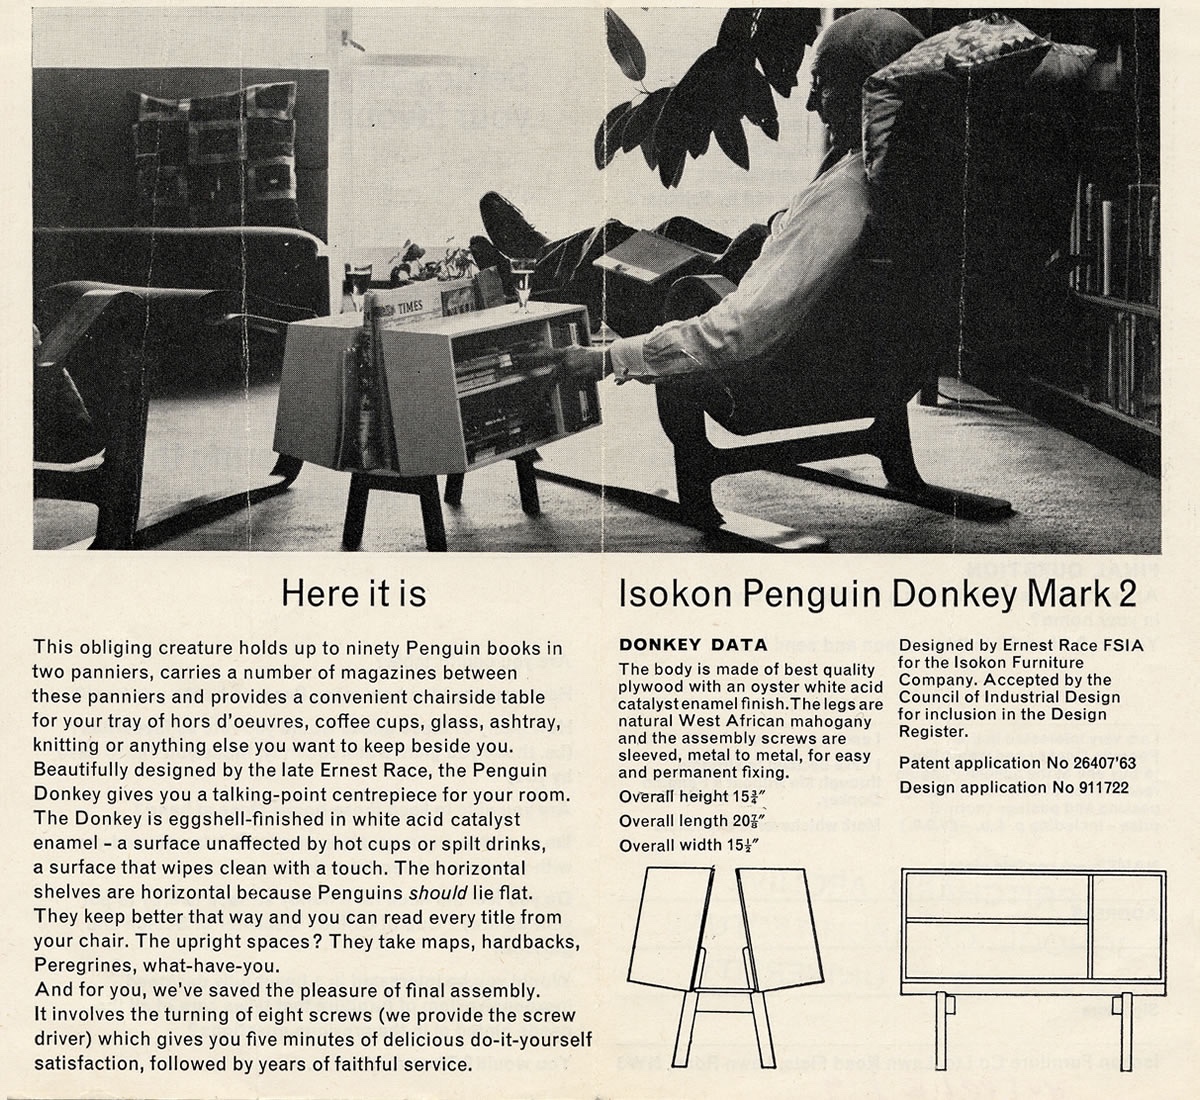 Isokon Penguin Donkey Mark 2 promotional leaflet.